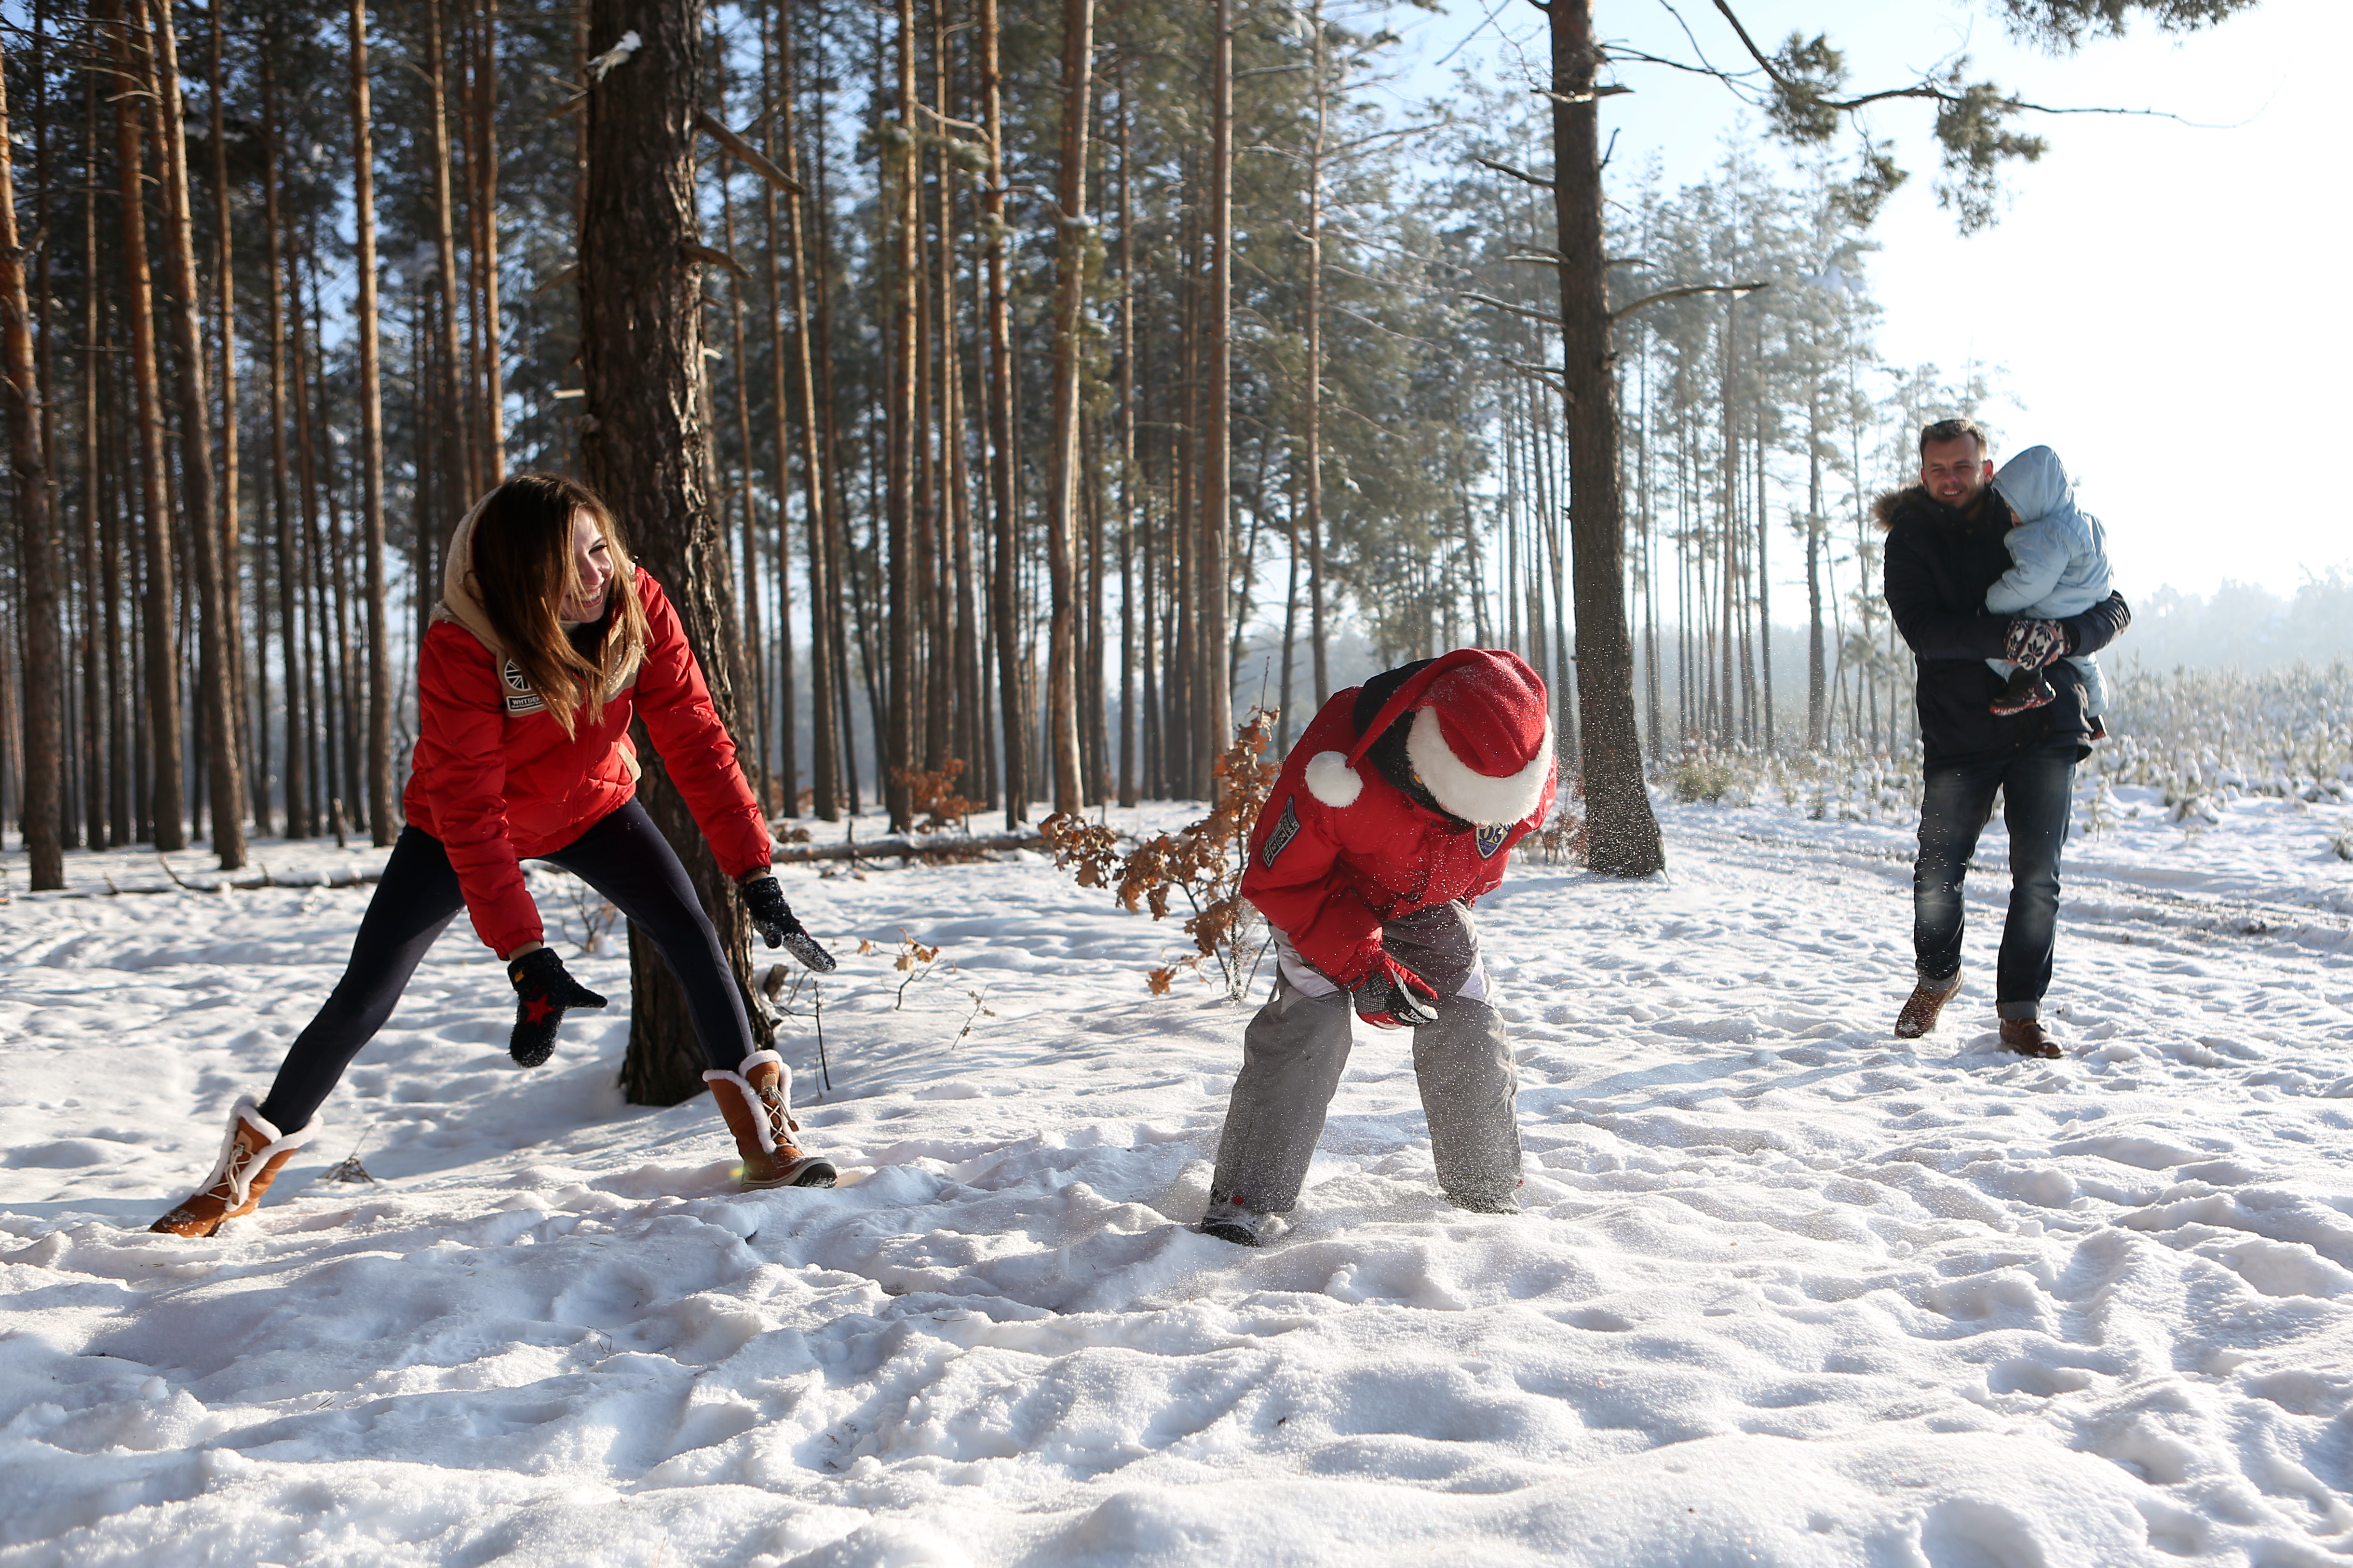 Играть в снежки кататься. Прогулки на свежем воздухе зимой. Прогулка в зимнем лесу. Забавы для детей на улице зимой. Зимние прогулки с детьми.